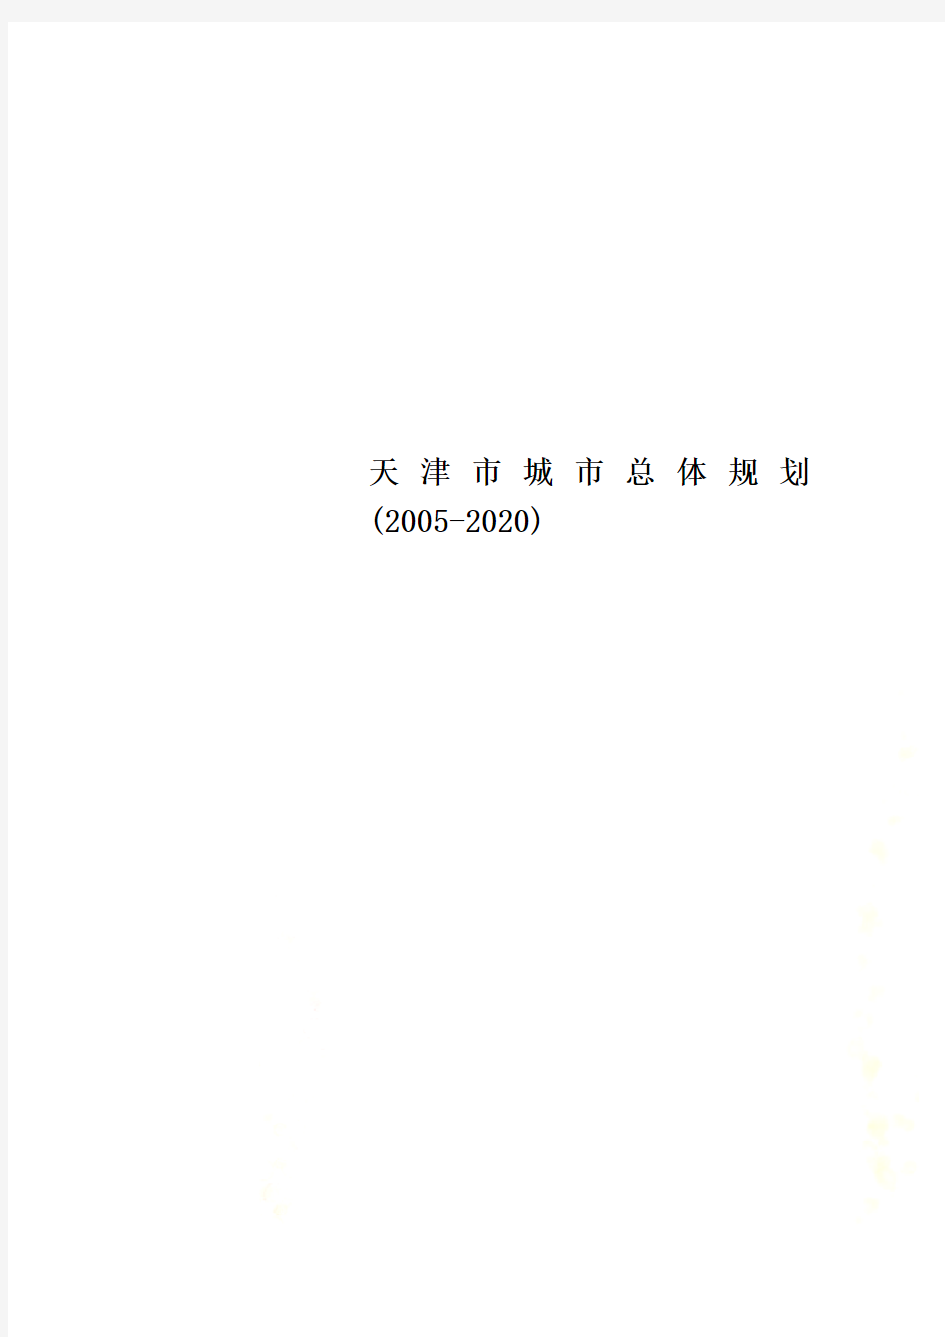 天津市城市总体规划(2005-2020)